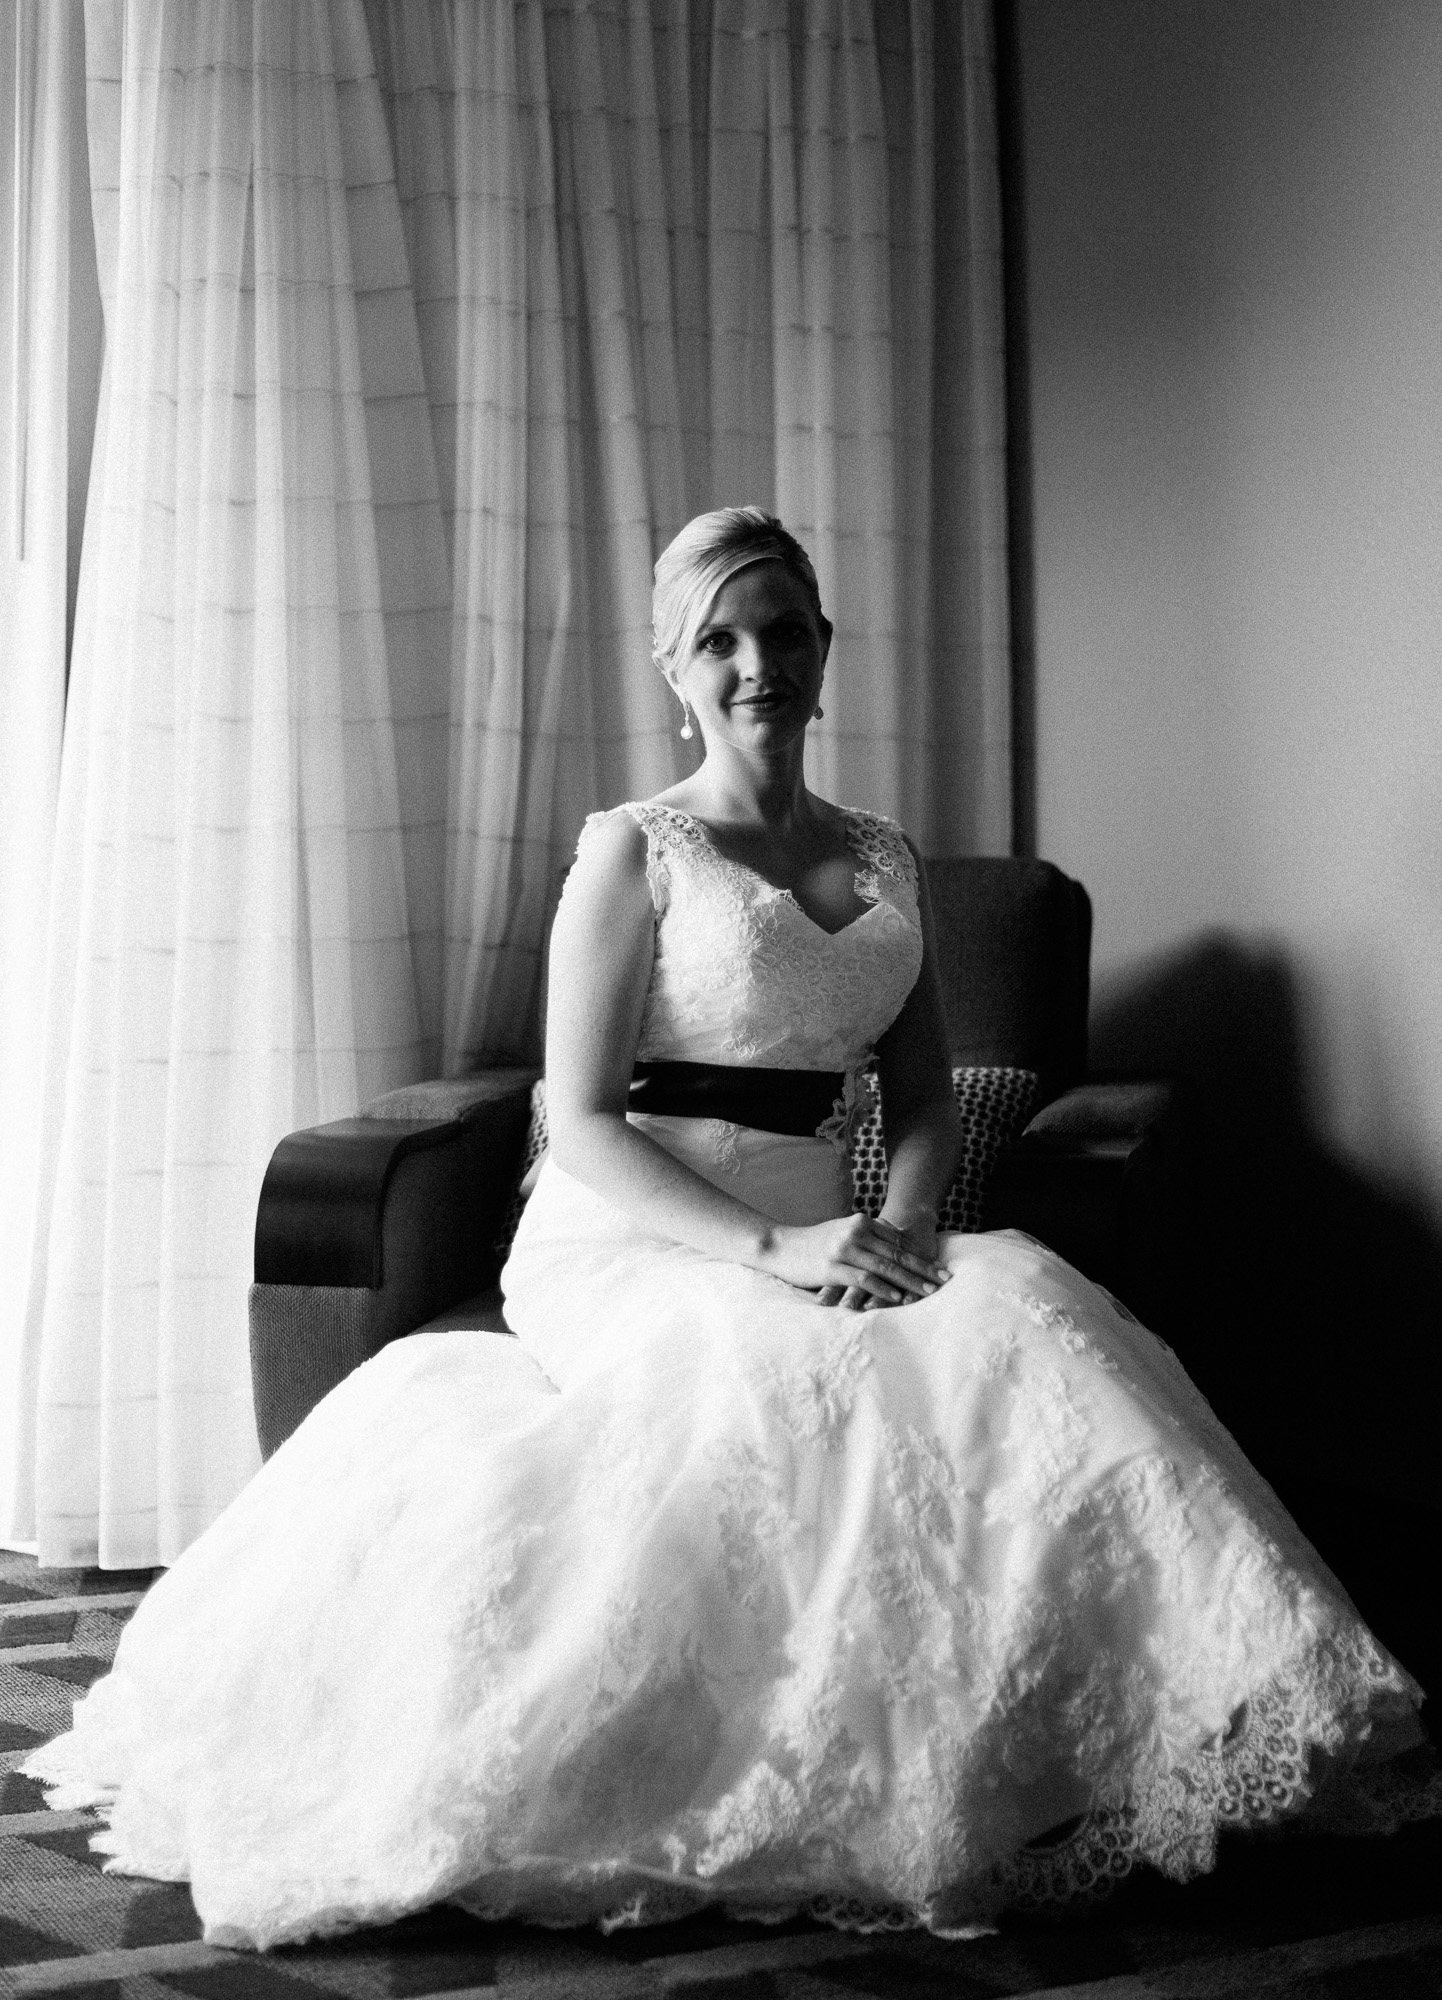 Lawrence, Kansas Engagement & Wedding Photographer